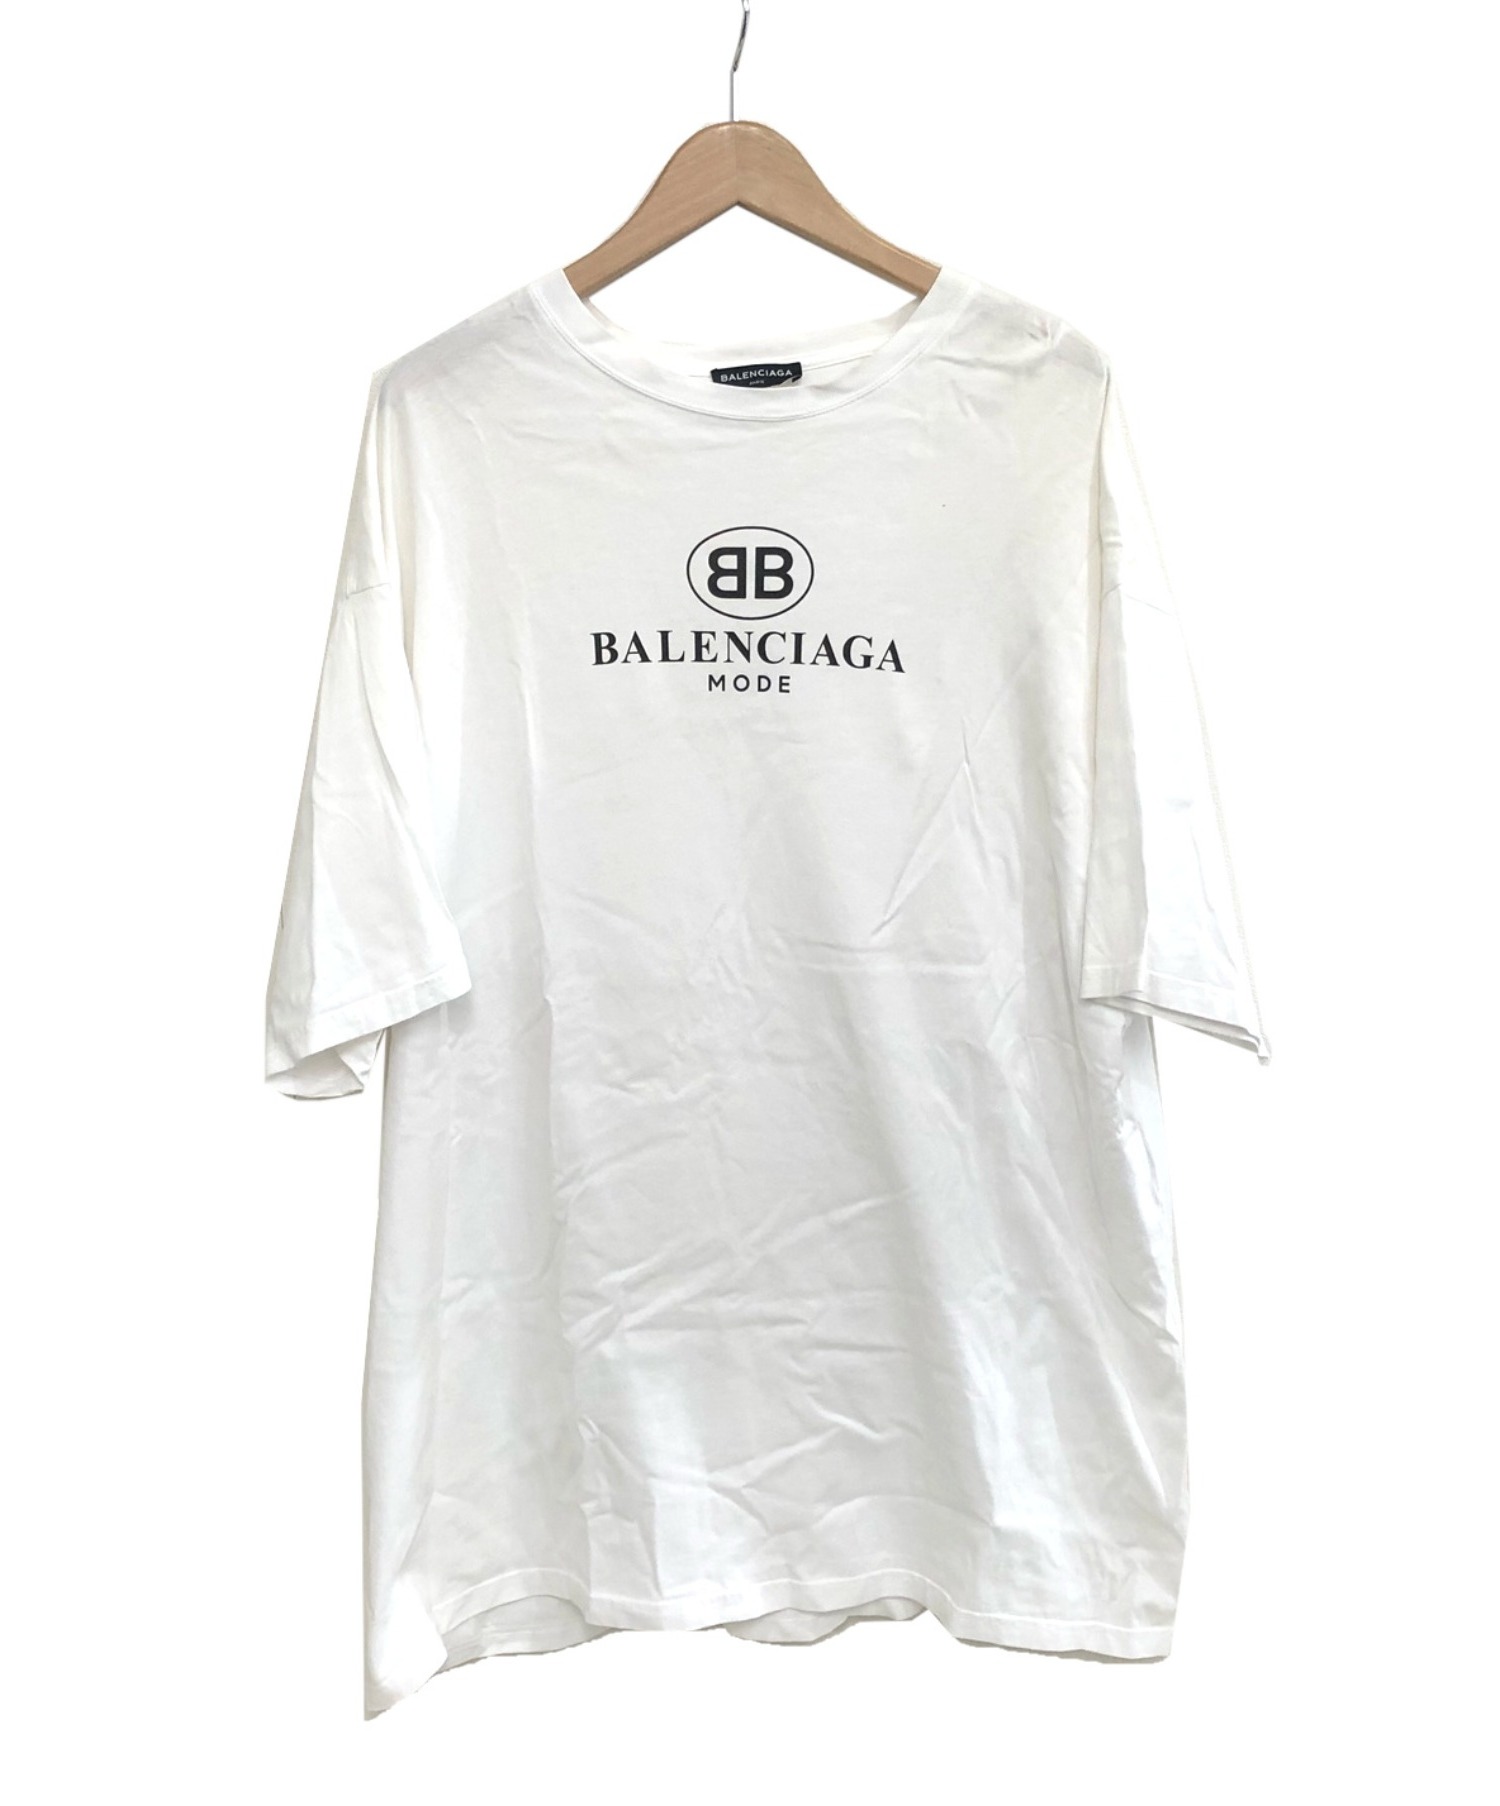 バレンシアガ balenciaga bb mode ロゴTシャツ オーバーサイズ-